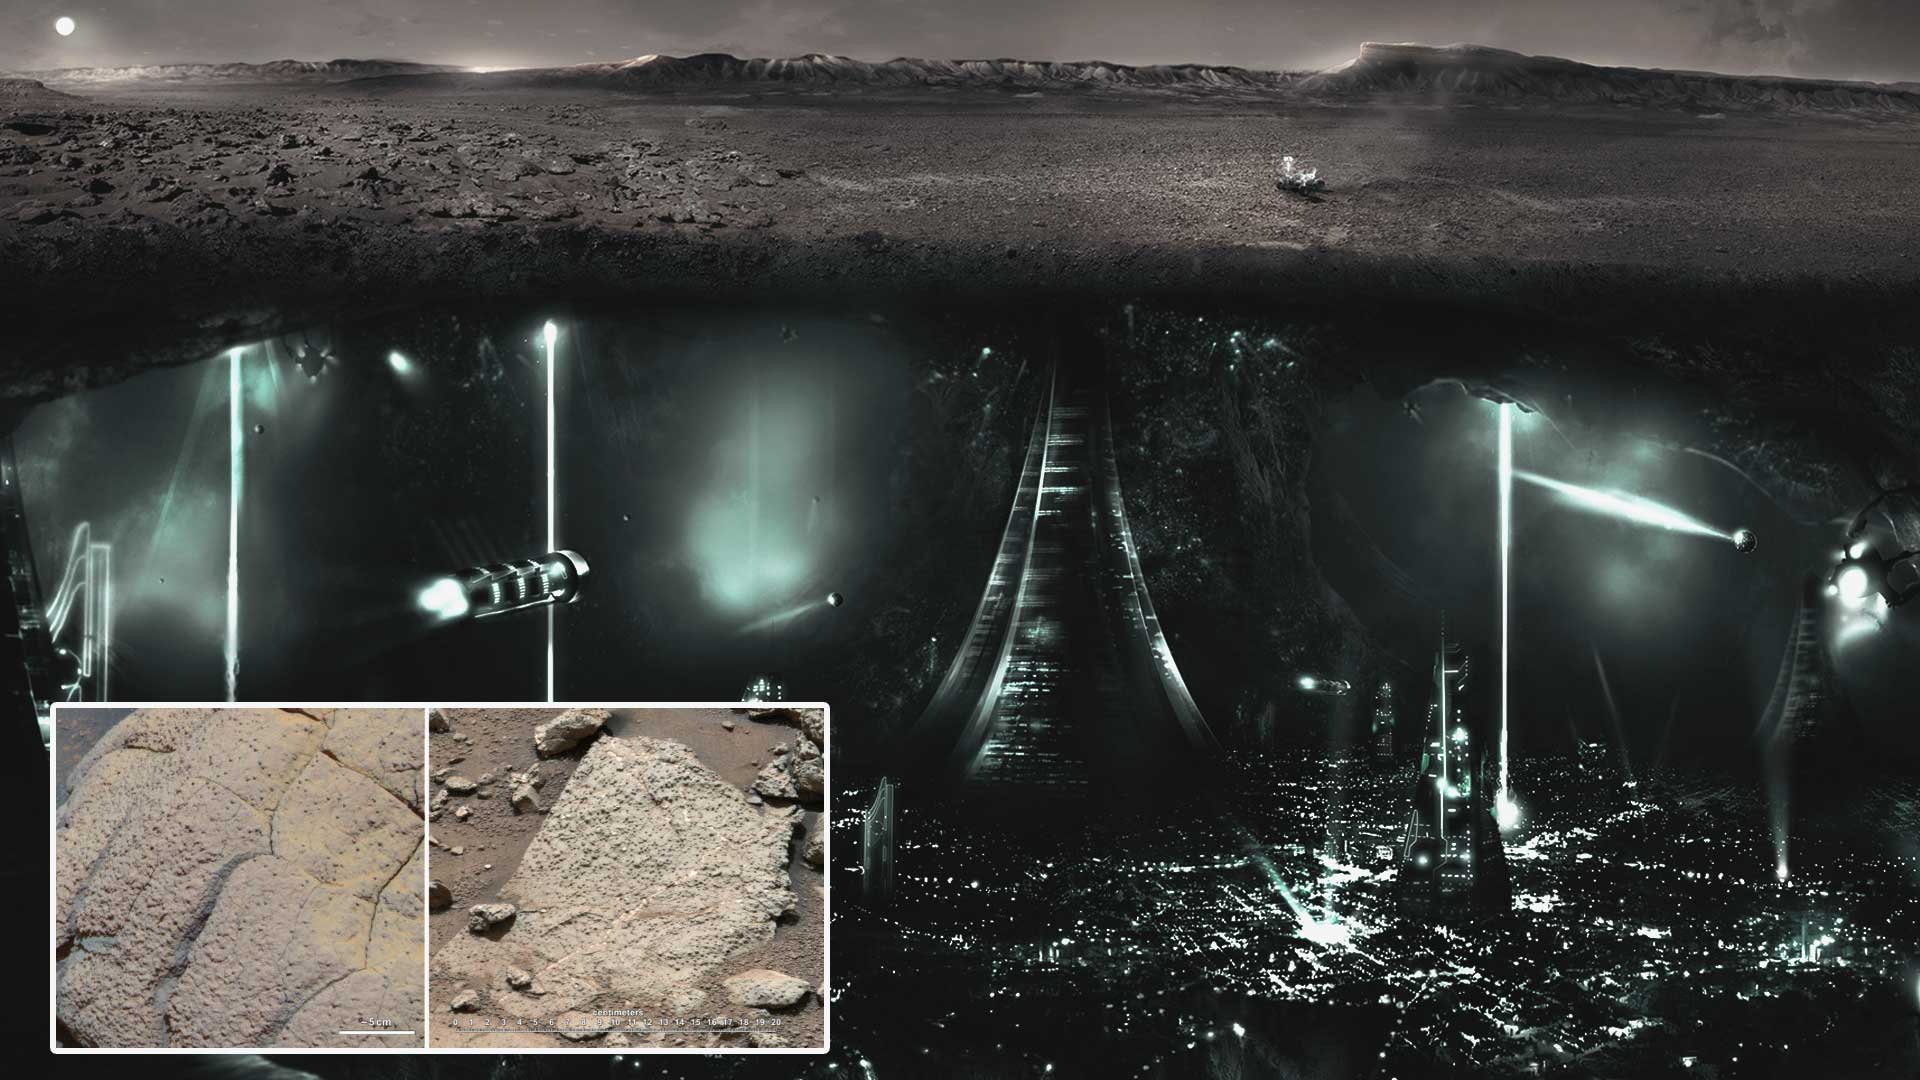 La NASA pudo haber destruido pruebas de vida de Marte hace 40 años